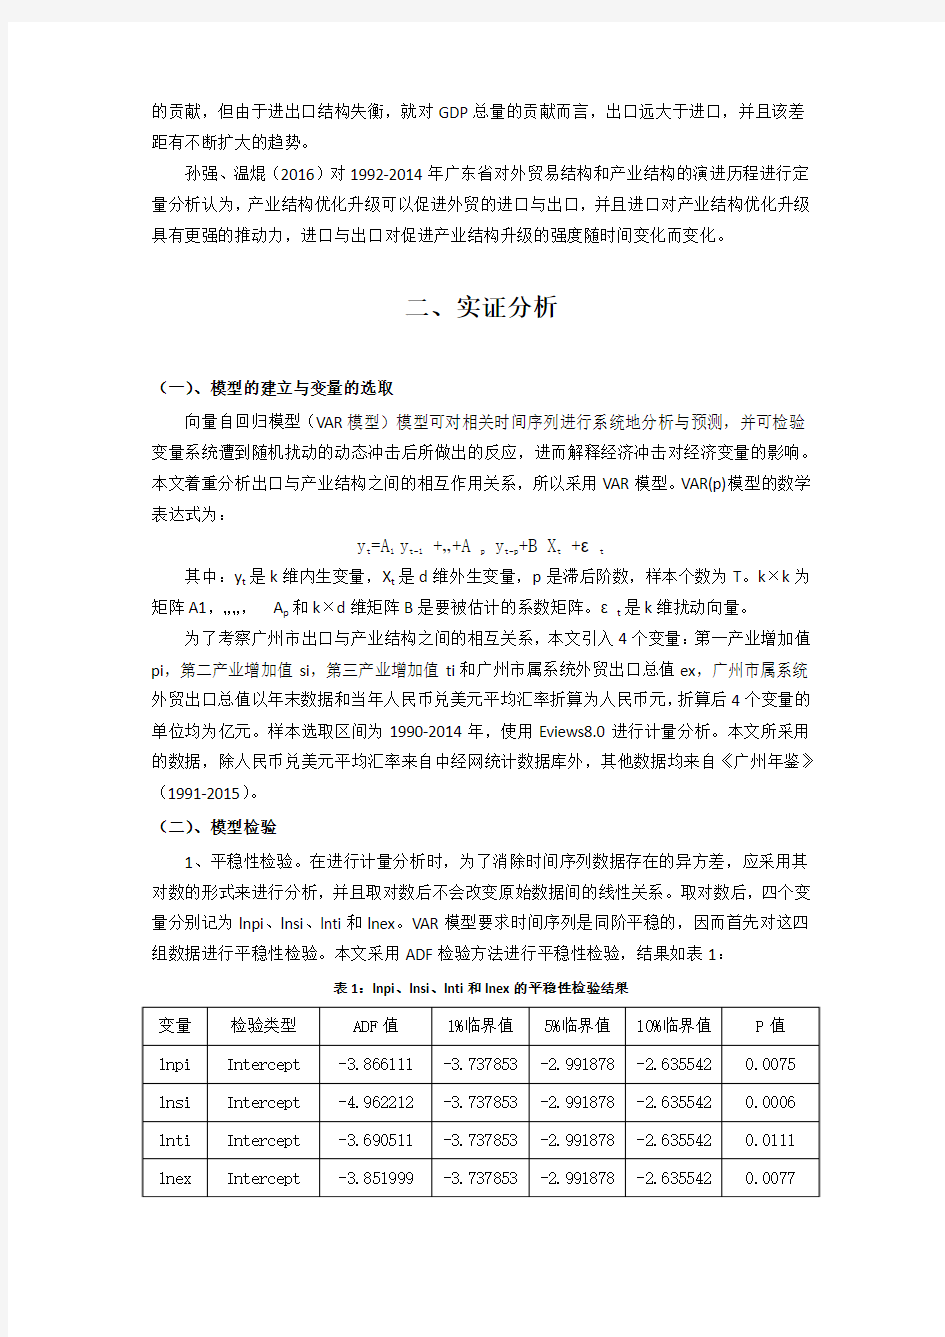 广州市外贸出口与产业结构关系研究